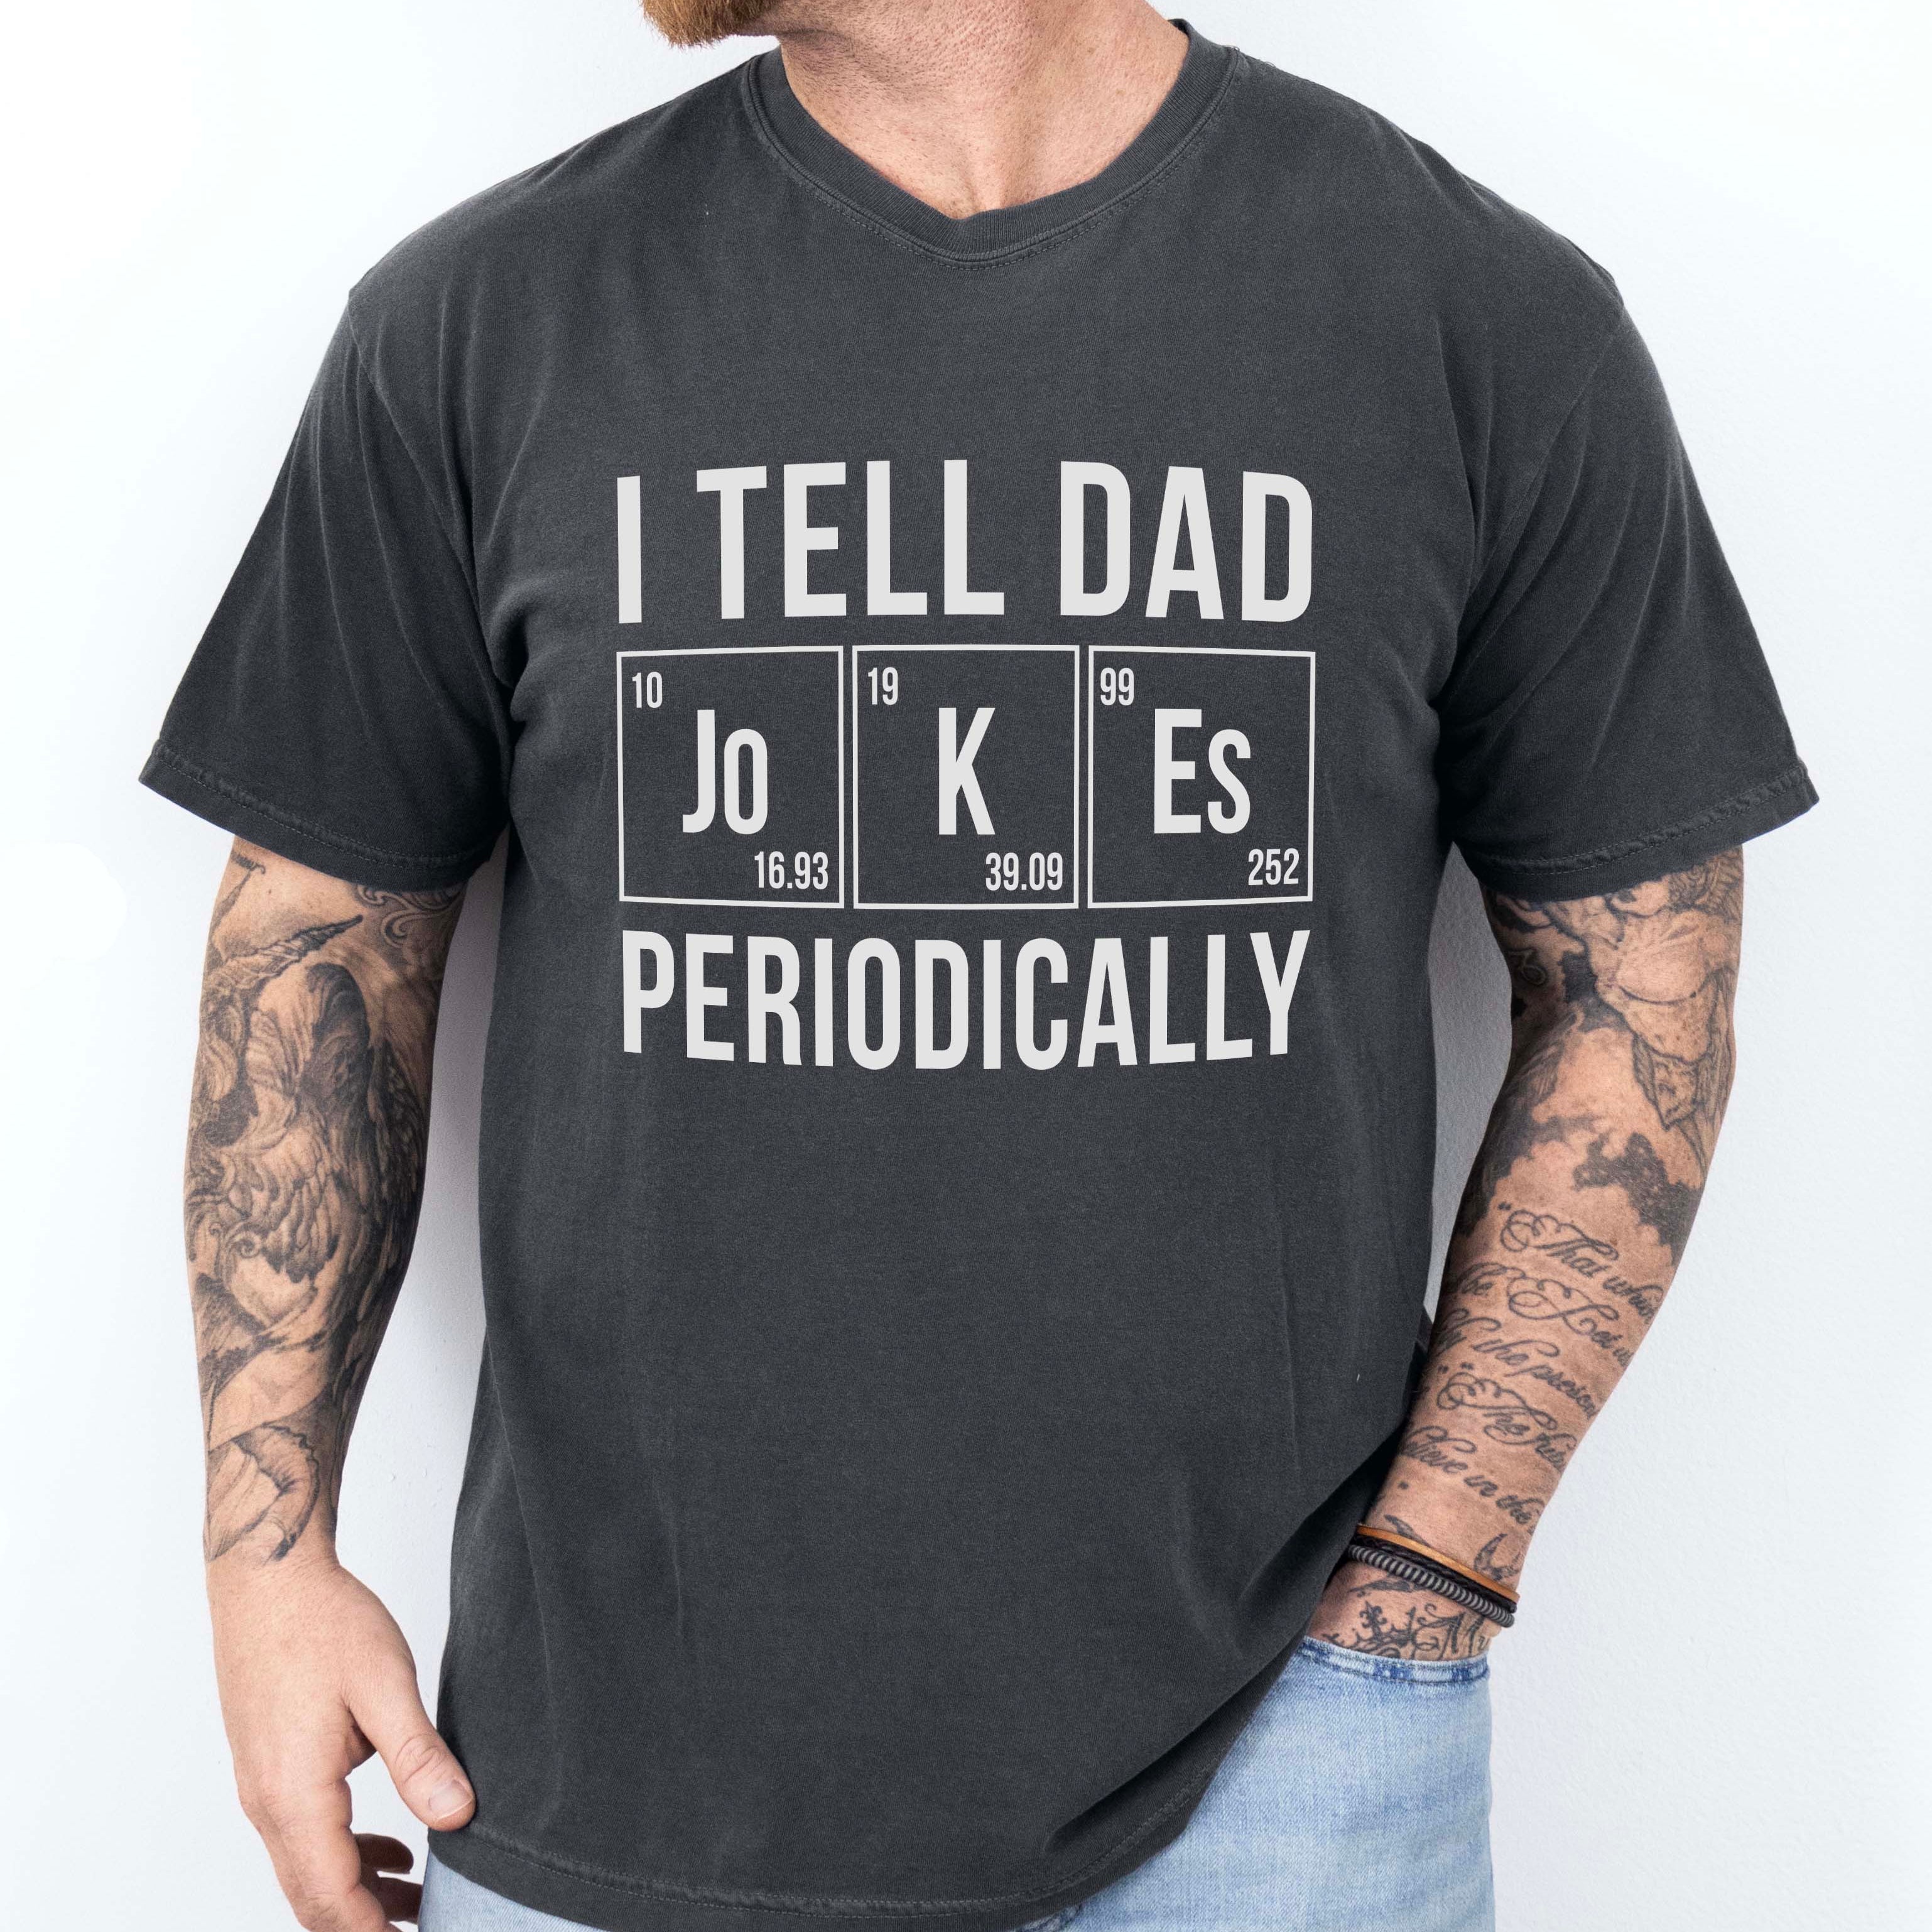 I Tell Dad Jokes Periodically Tee